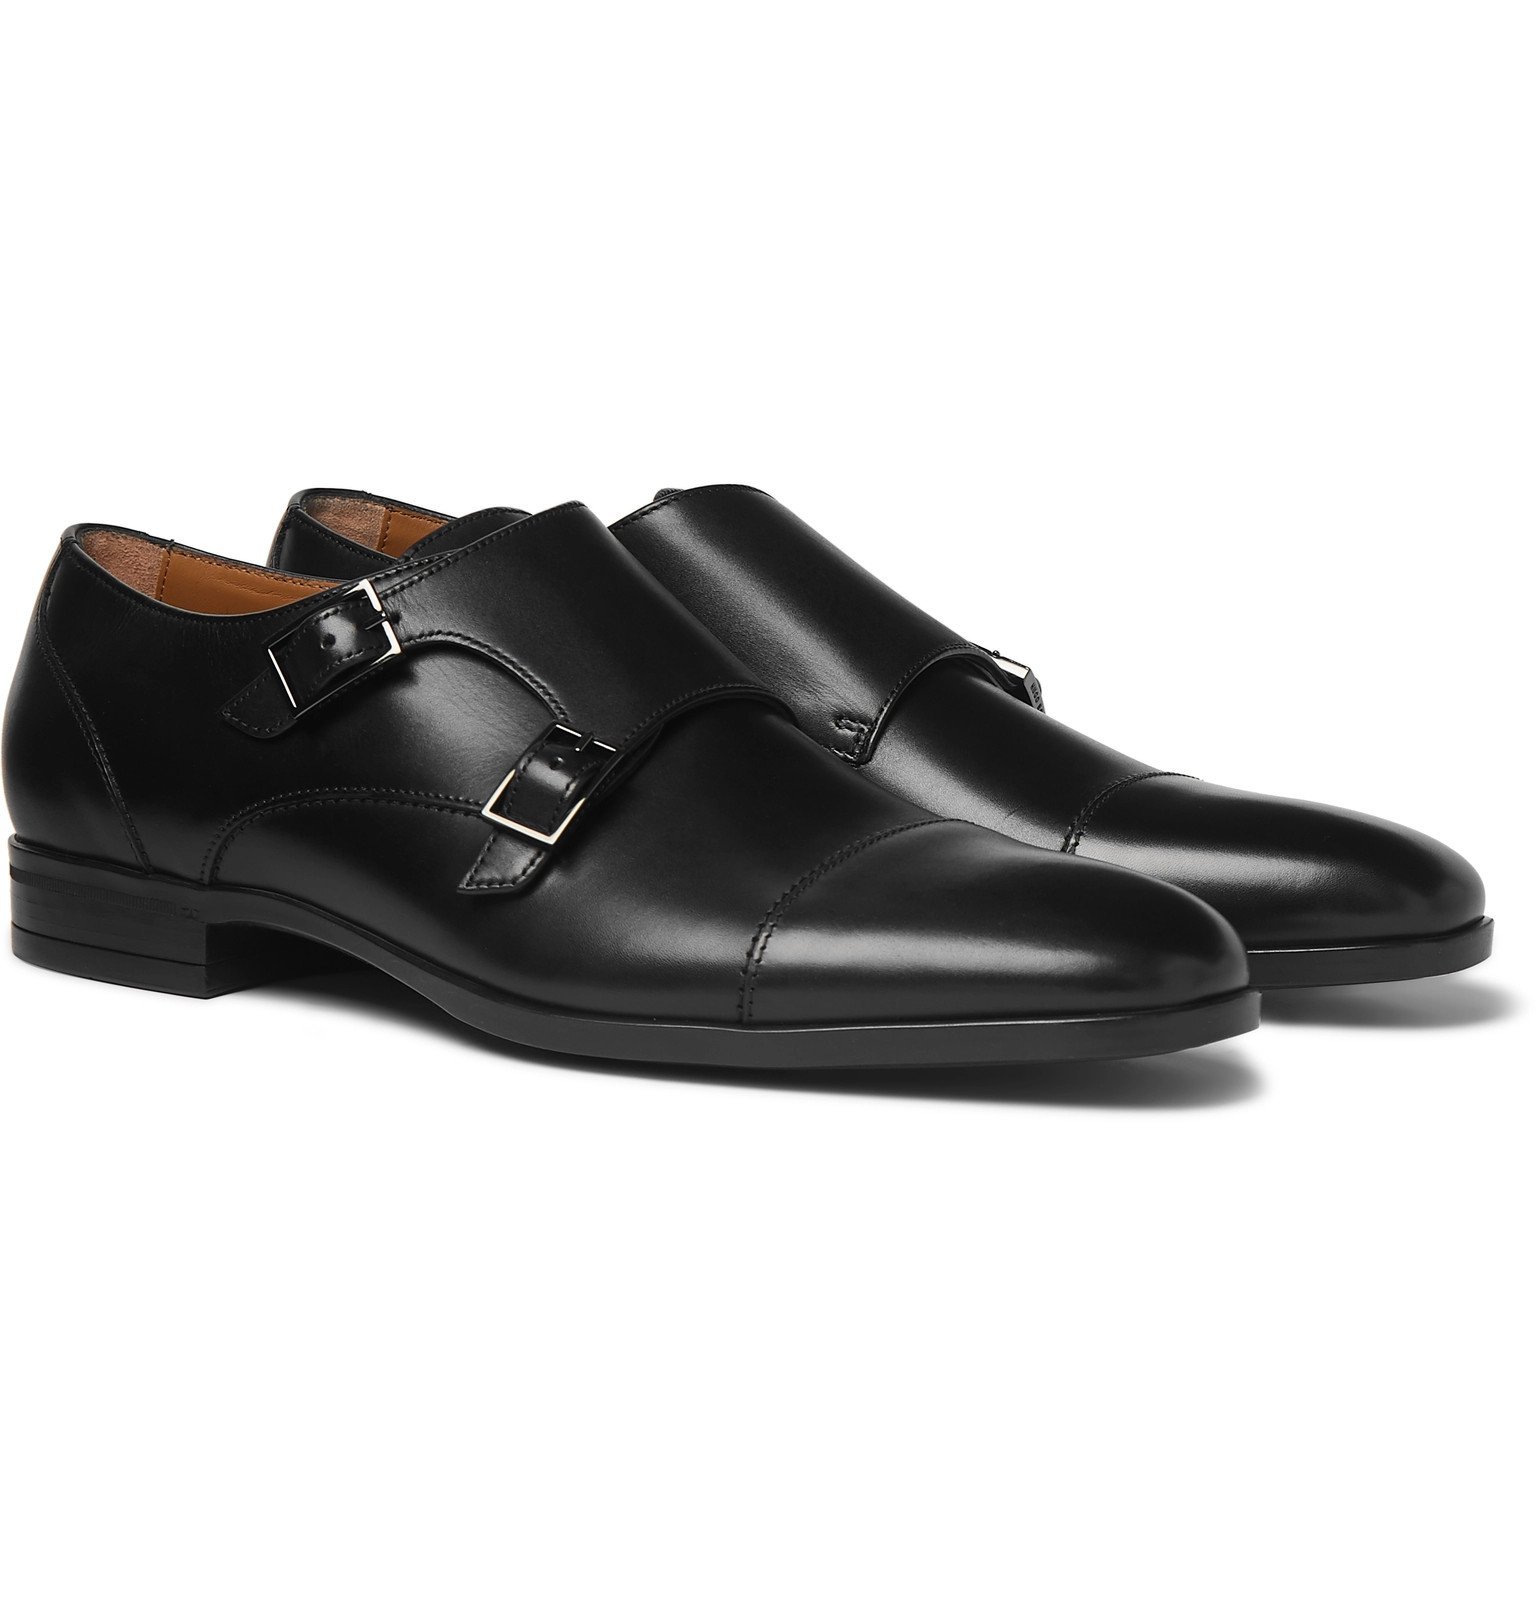 Kensington Leather Monk-Strap Shoes 